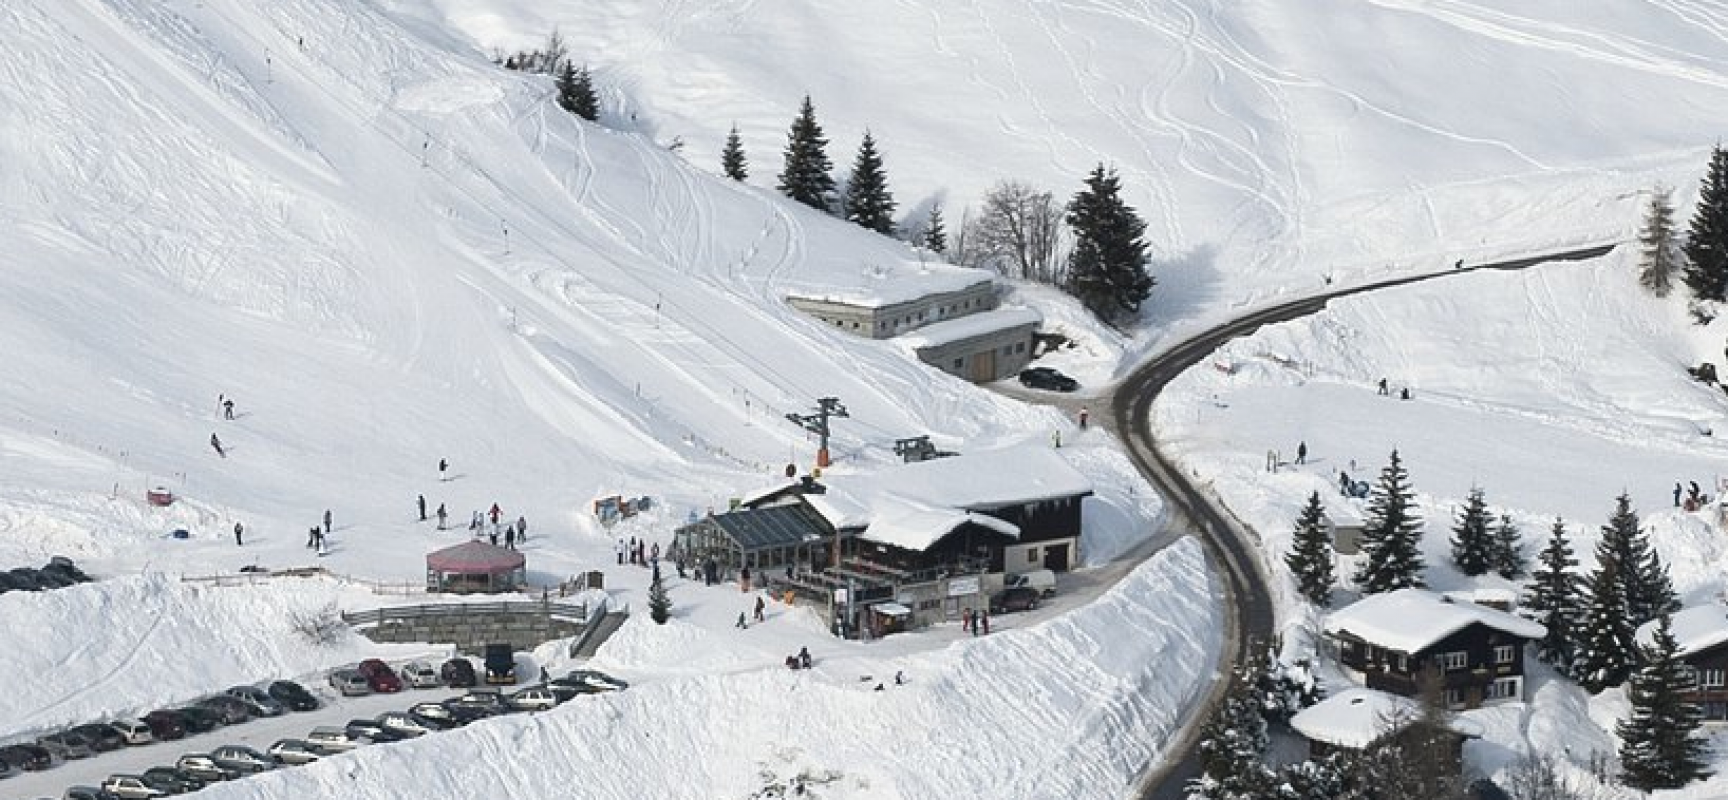 Bergrestaurant Skihütte bietet eine offene Stelle